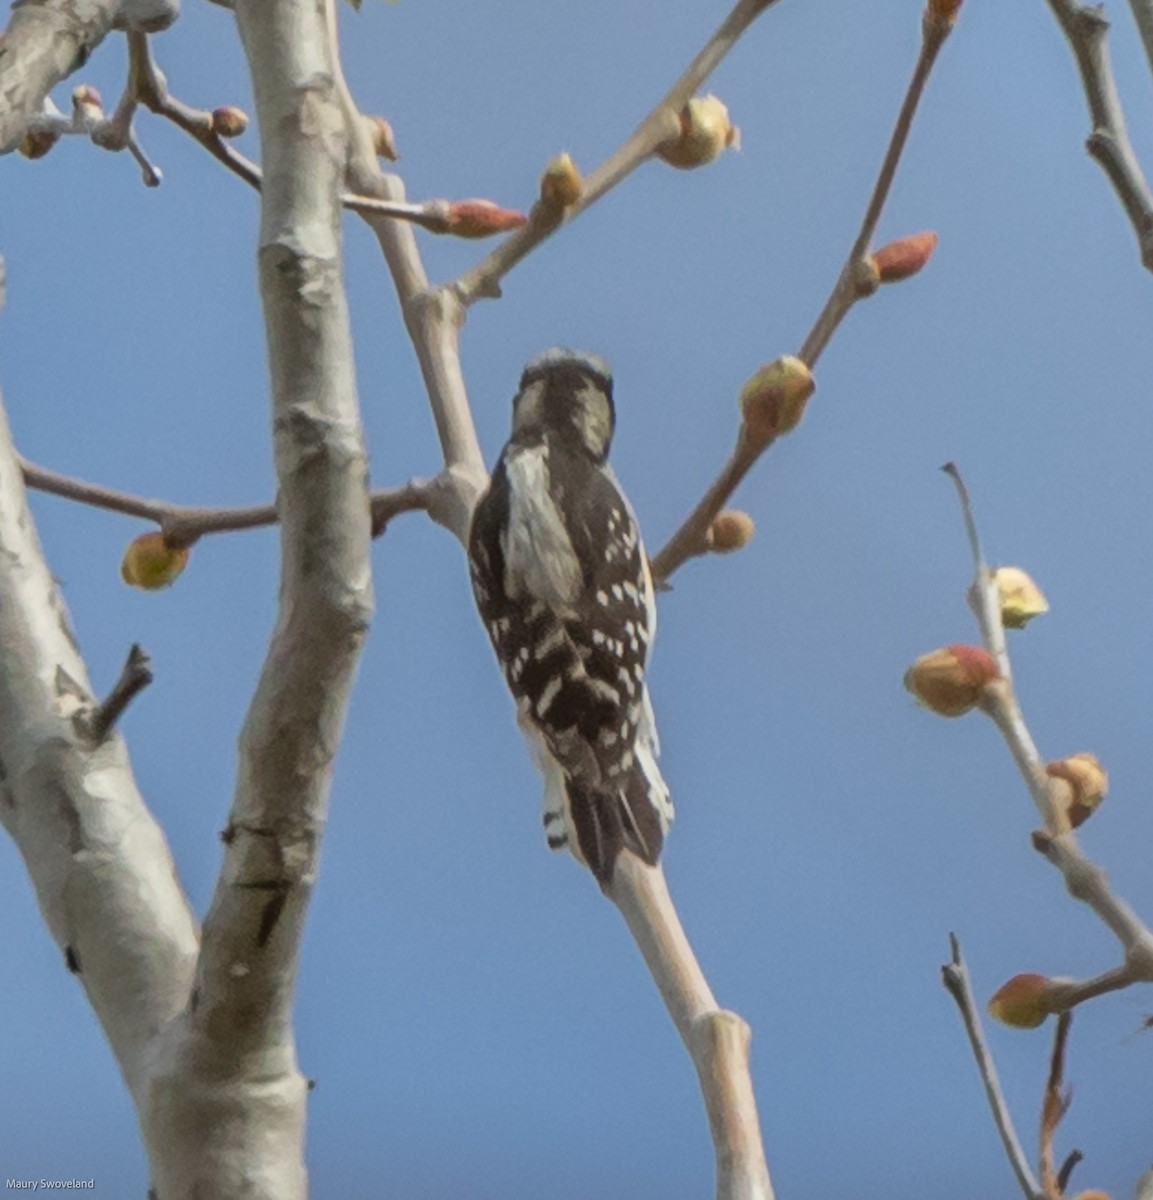 Downy Woodpecker - Maury Swoveland